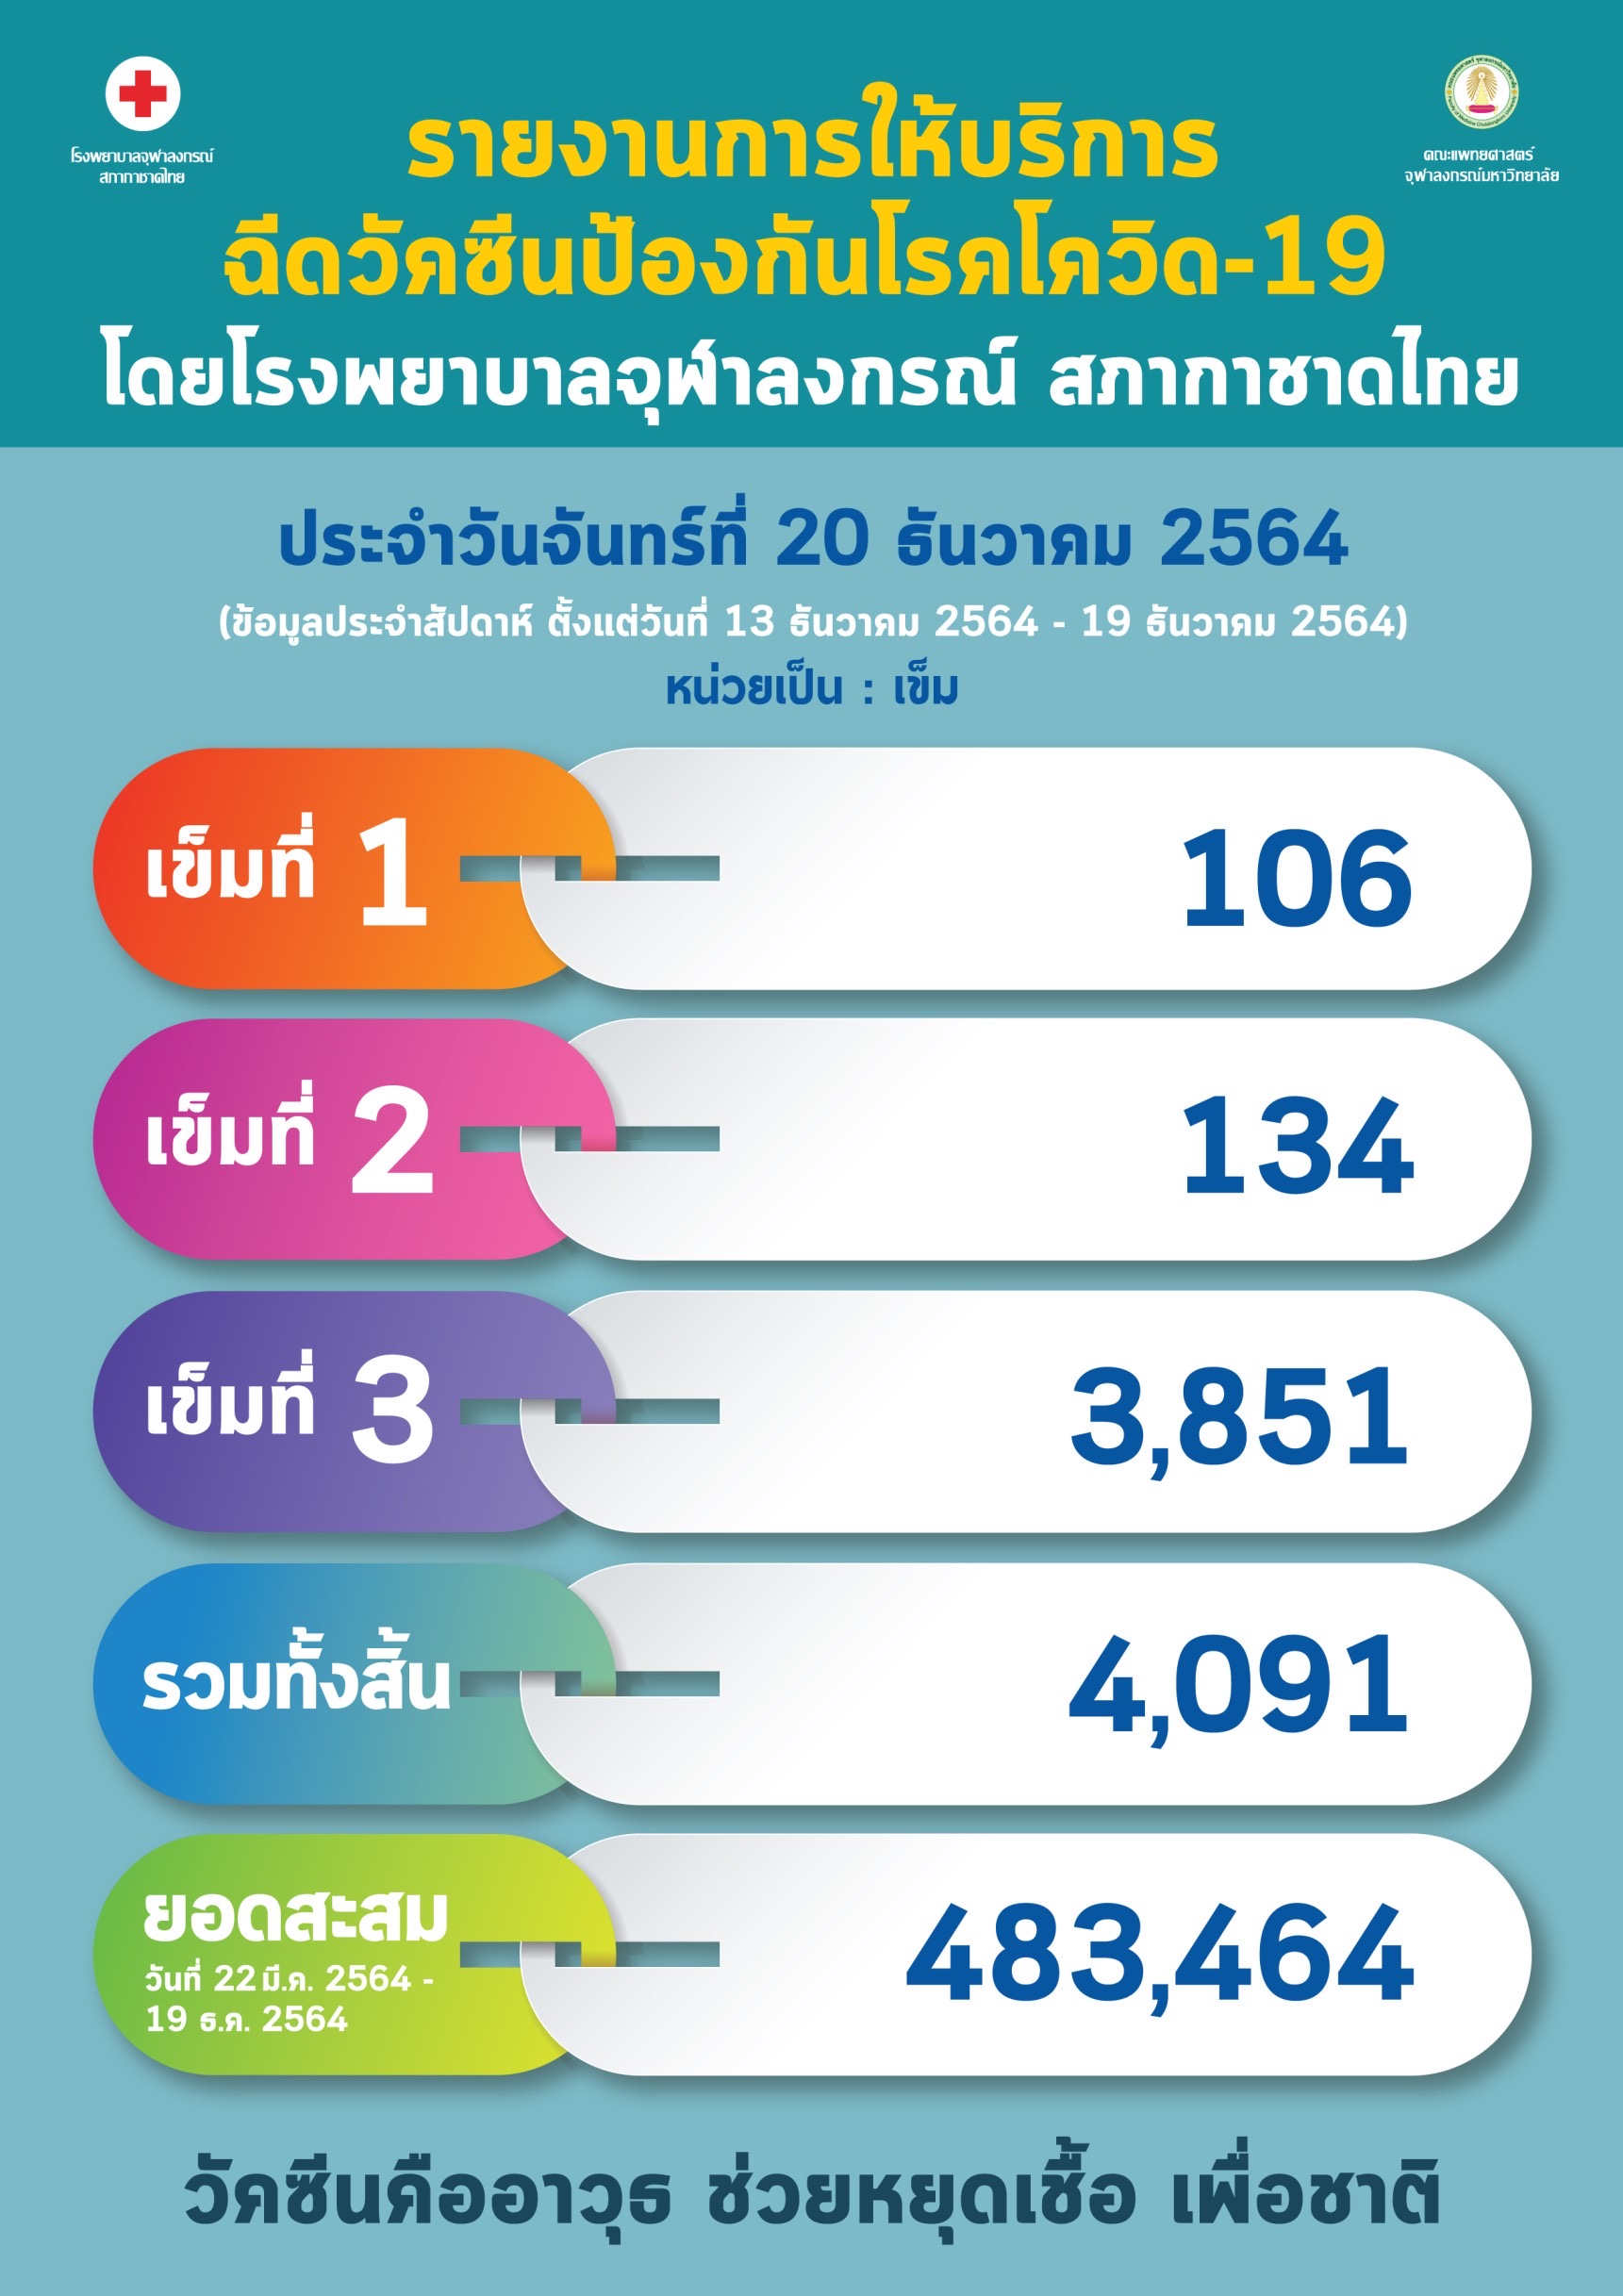 รายงานการให้บริการ ฉีดวัคซีนป้องกันโรคโควิด-19 โดยโรงพยาบาลจุฬาลงกรณ์ สภากาชาดไทย ประจำวันจันทร์ที่ 20 ธันวาคม 2564